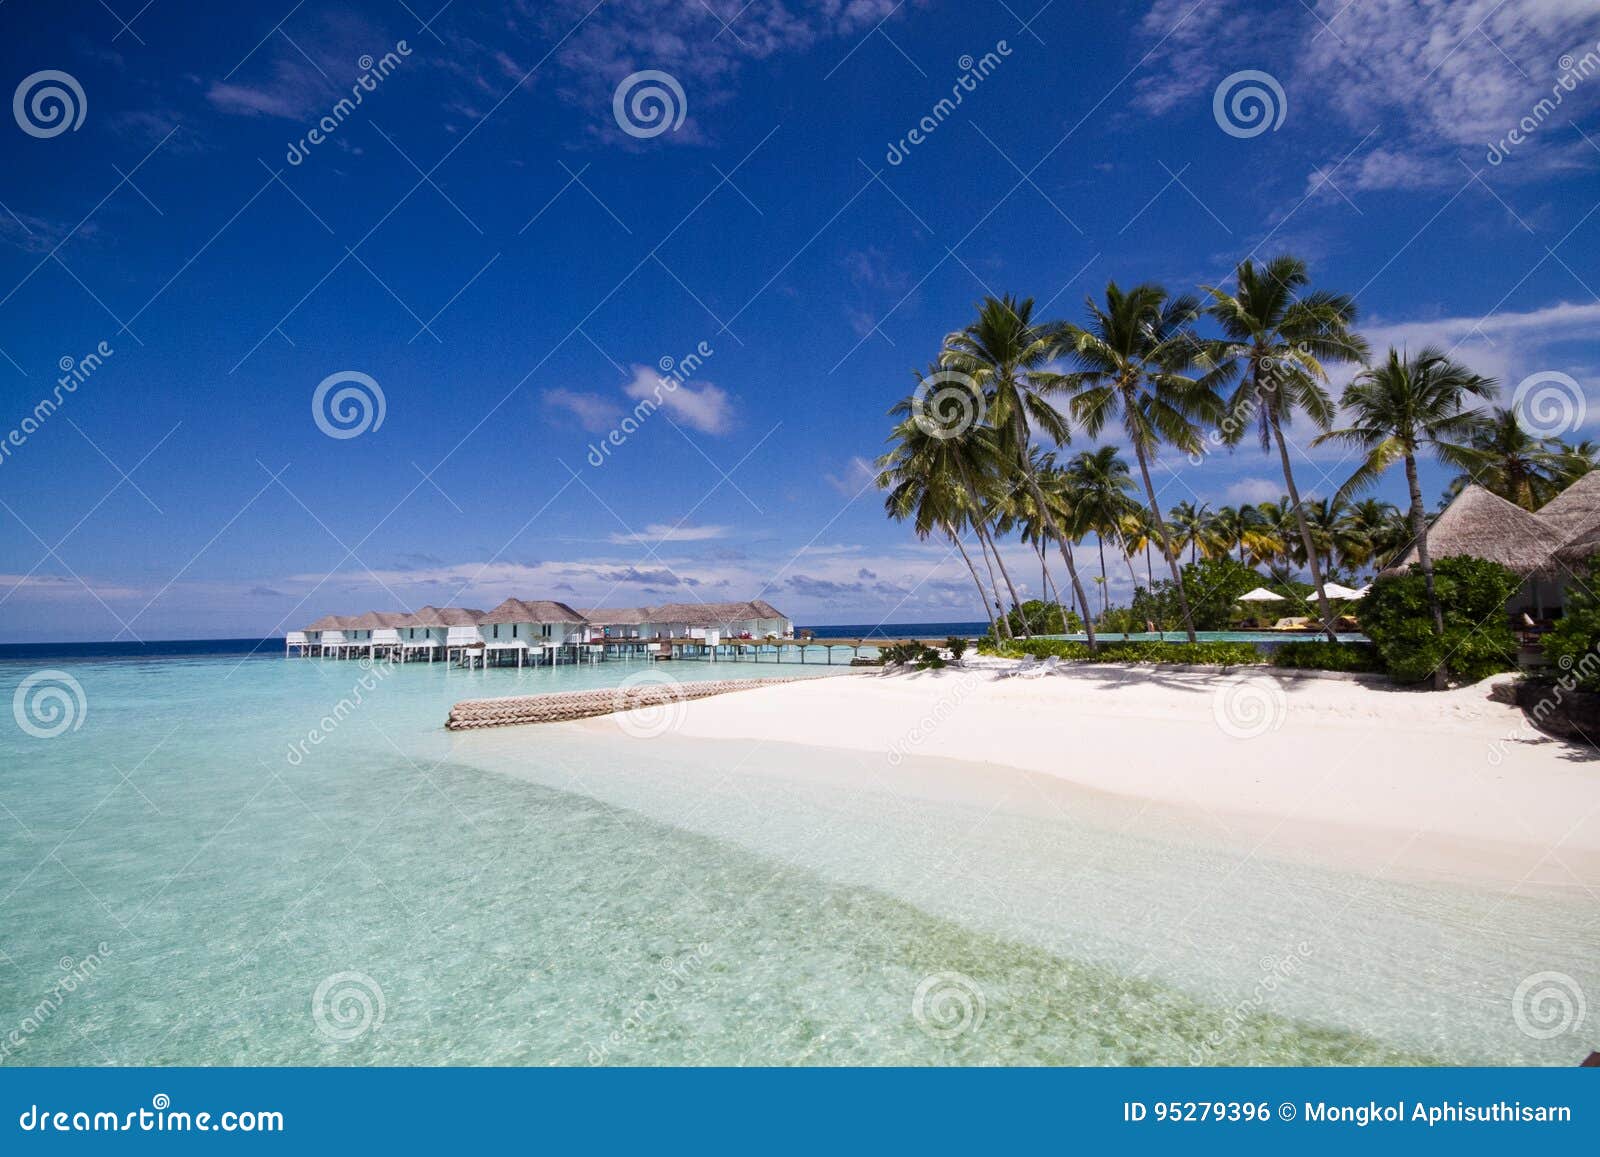 пляж красивейшие Мальдивы. Красивый пляж с белым песком в Мальдивах